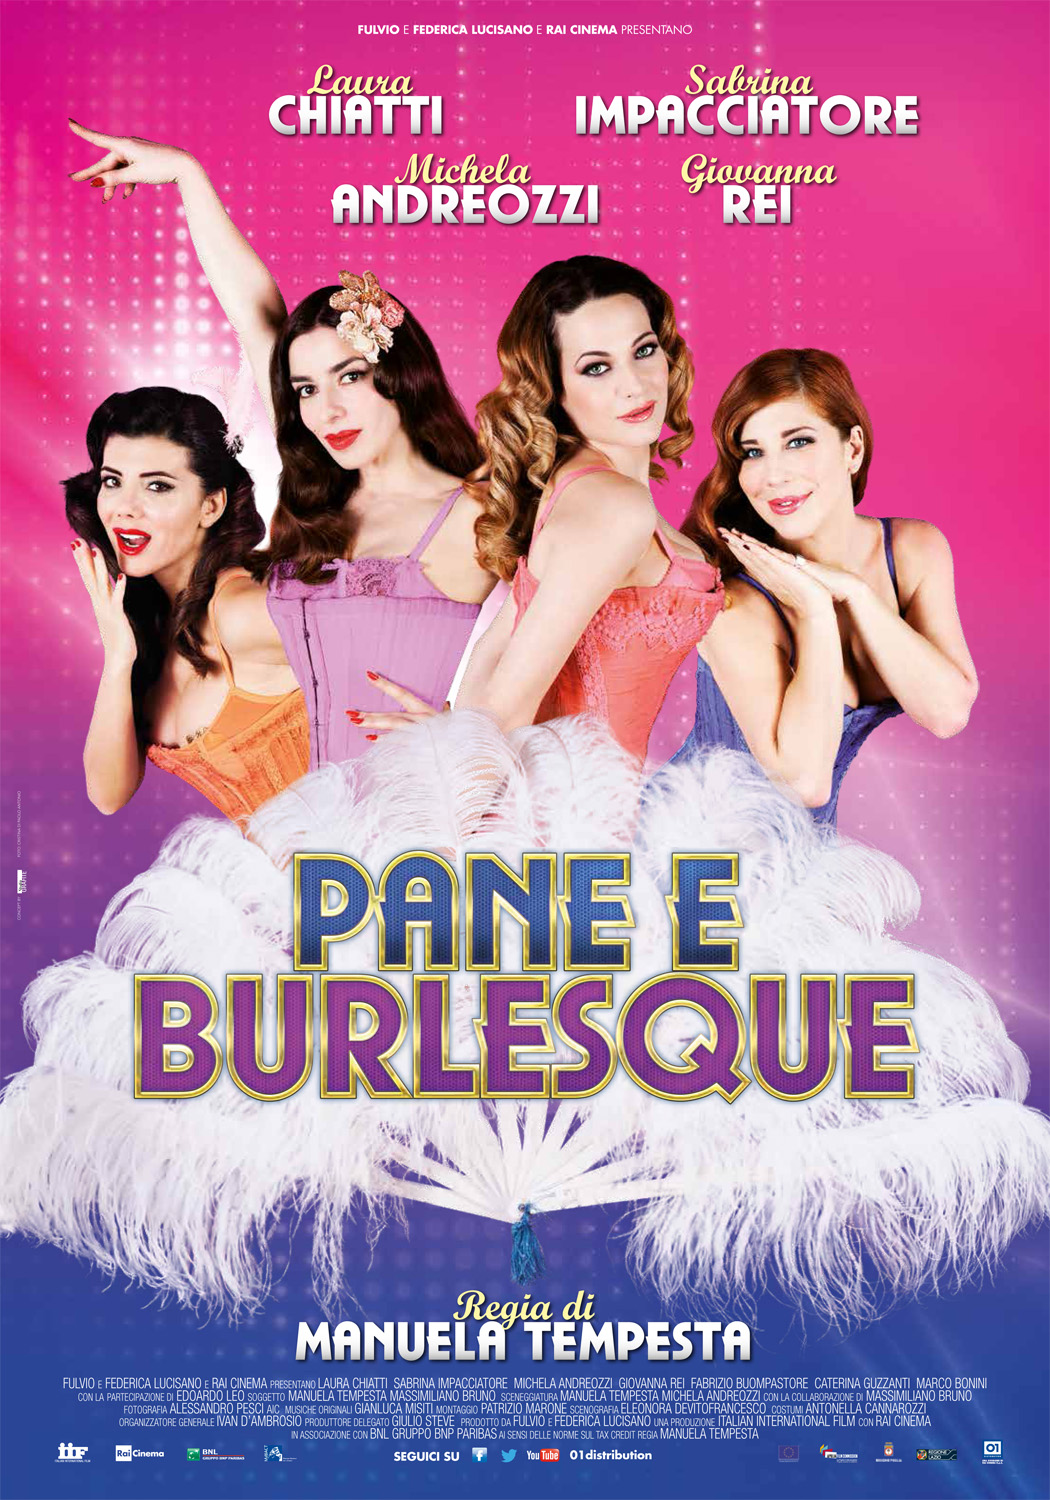 Burlesque 2010 torrent italian